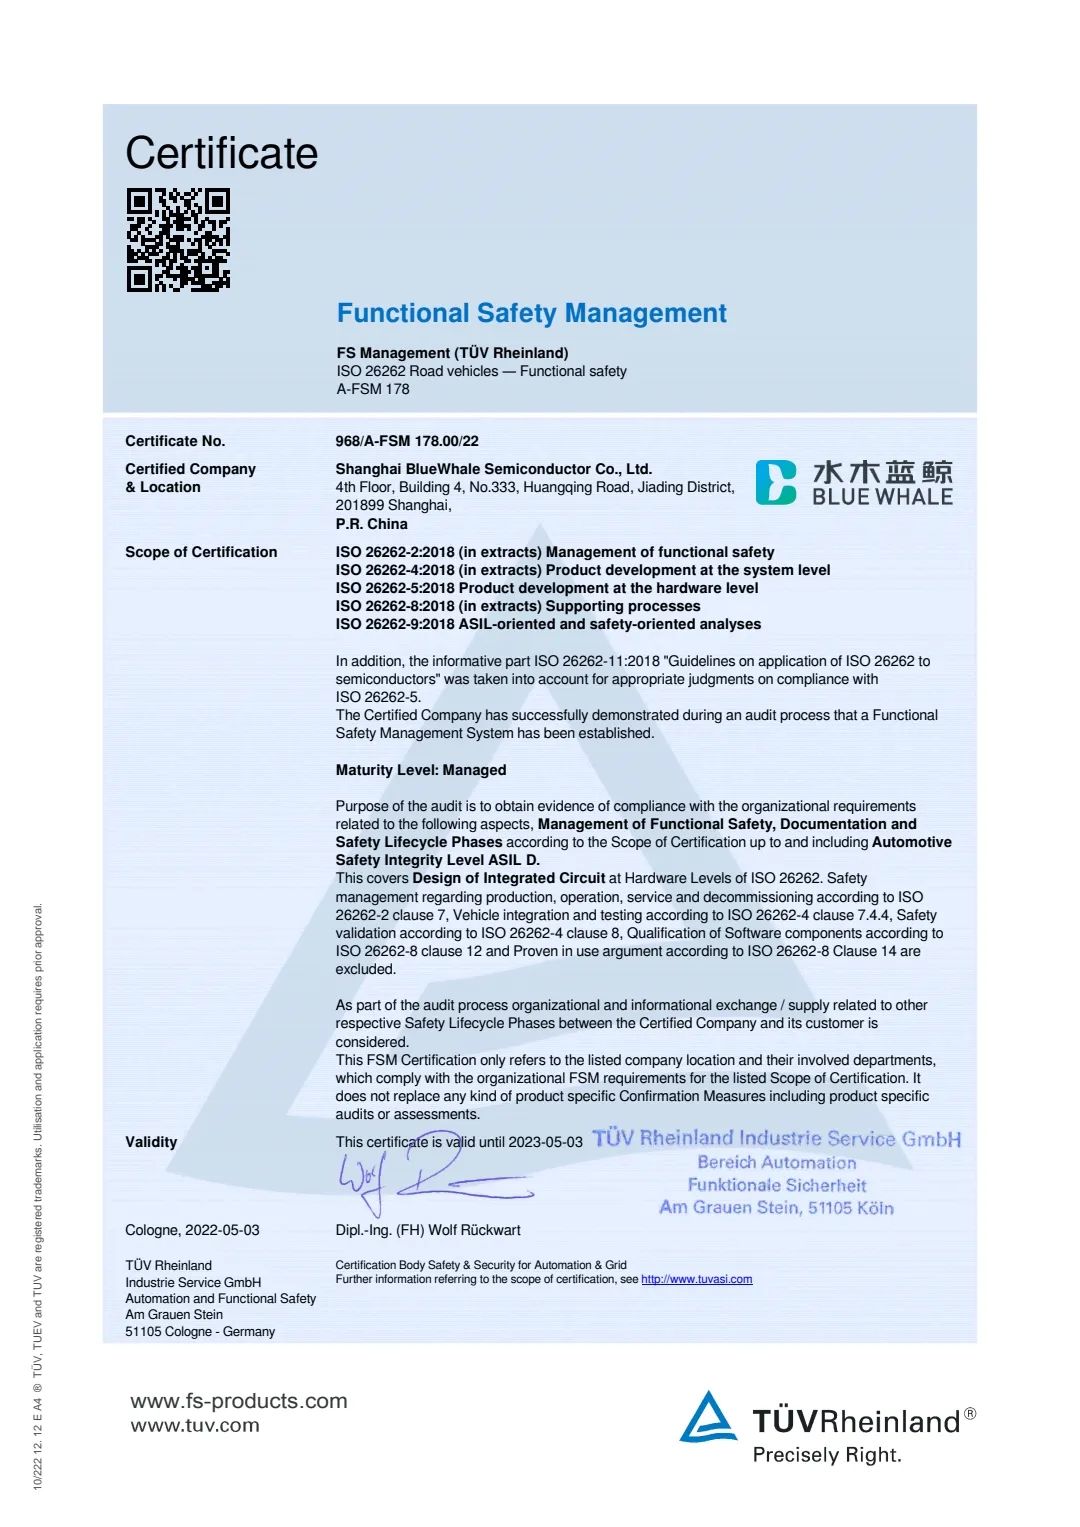 曦华科技正式通过ISO26262最高等级汽车功能安全管理认证